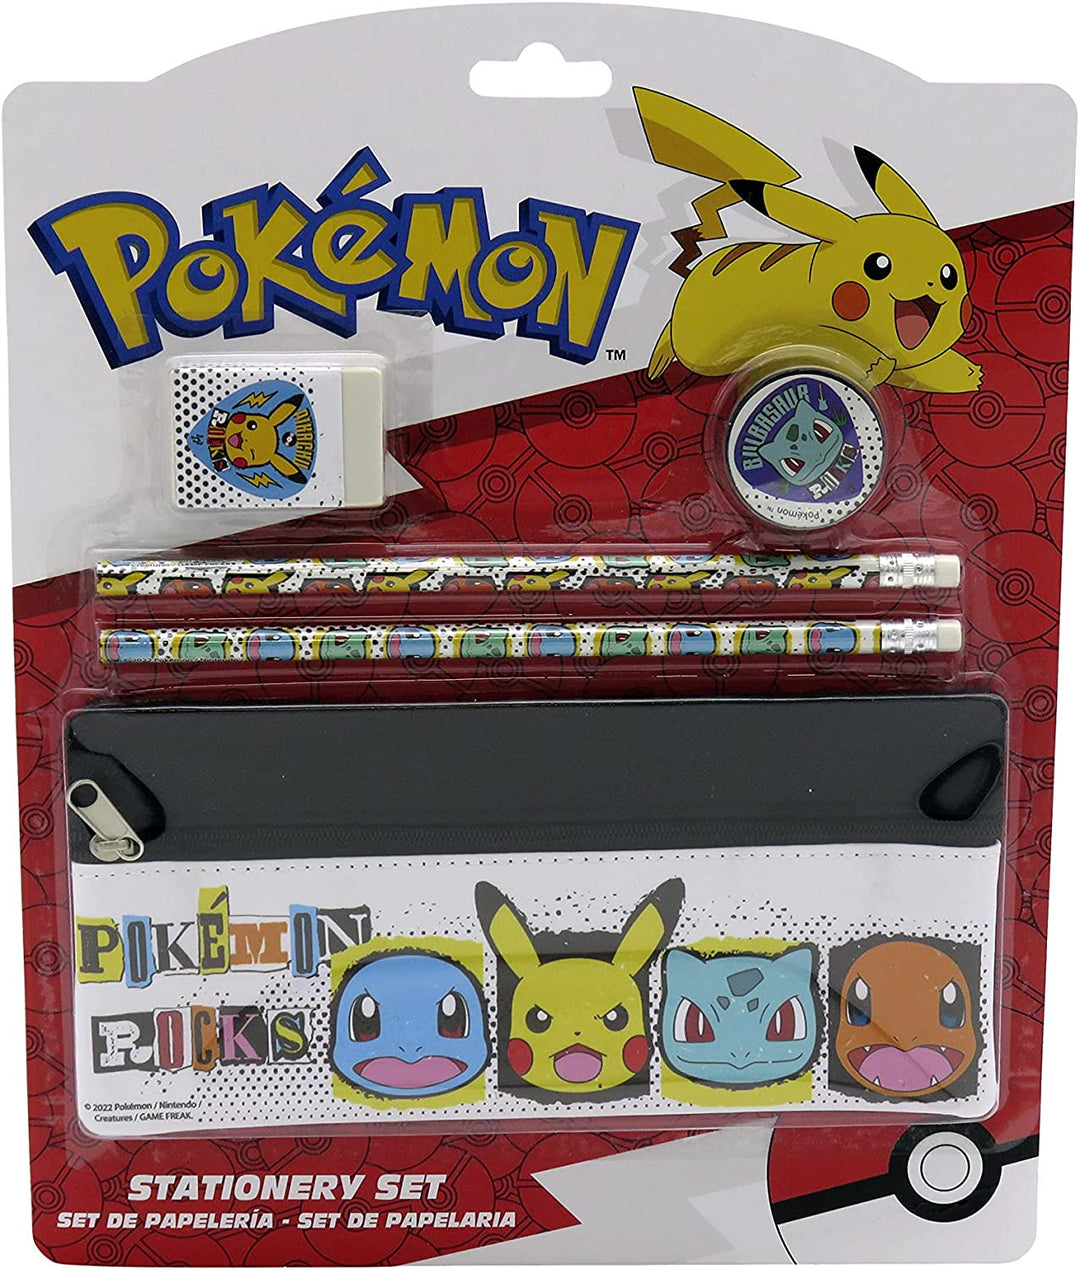 Briefpapier-Set mit Pokemon-Hülle (CyP Brands)